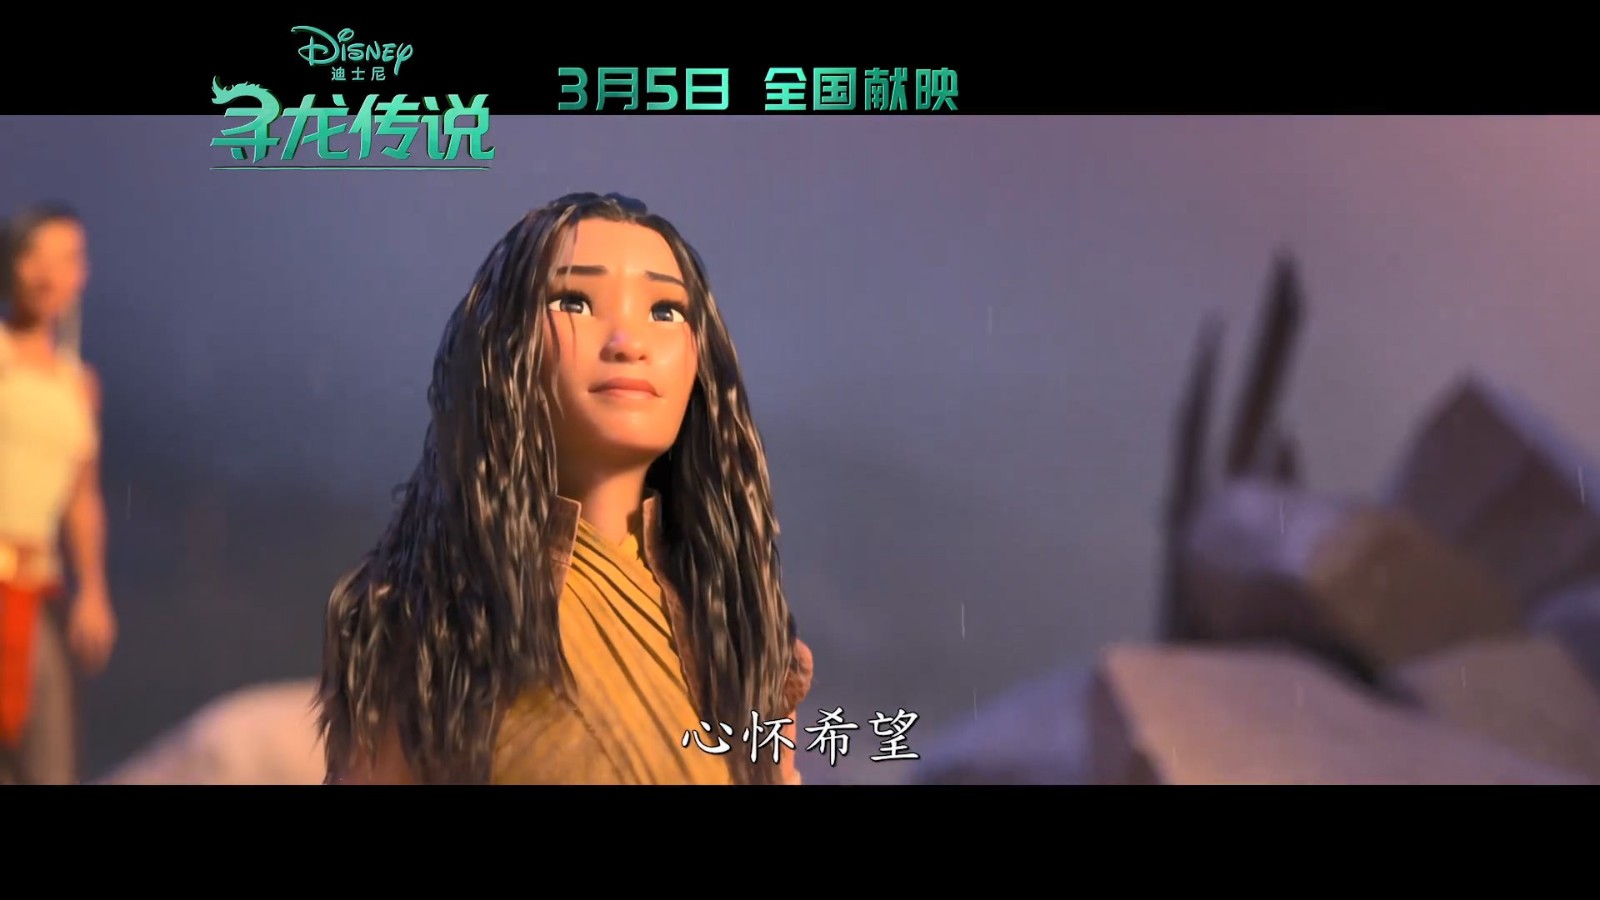 《寻龙传说》中国独家预告发布 多位迪士尼女主现身